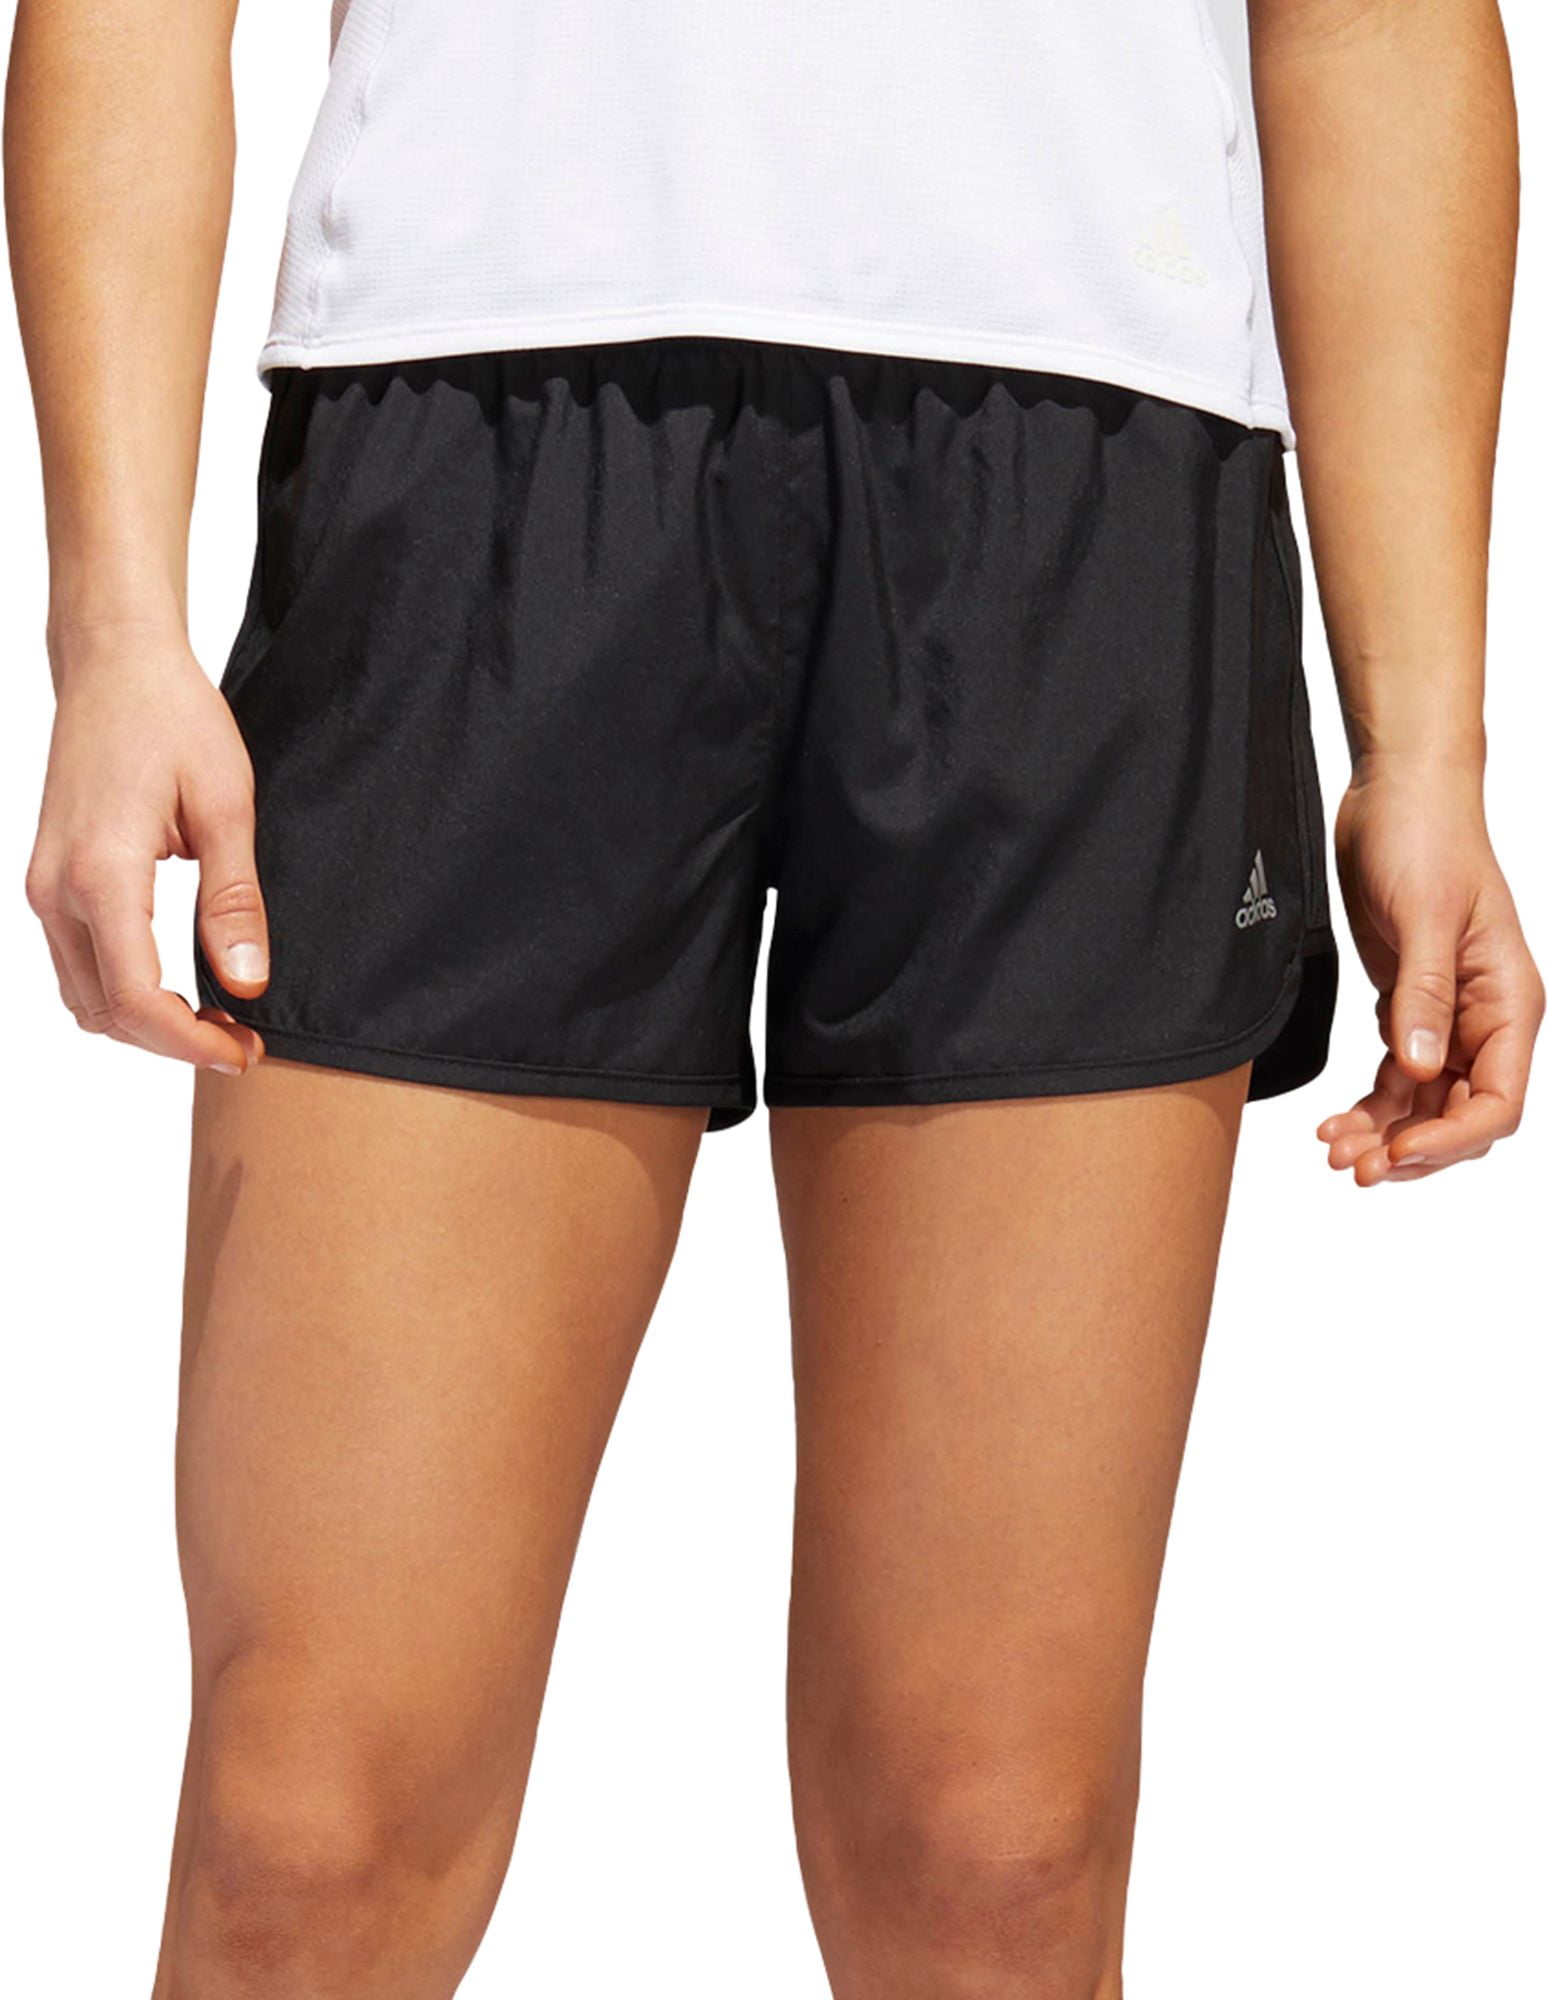 adidas women's marathon 20 speed shorts